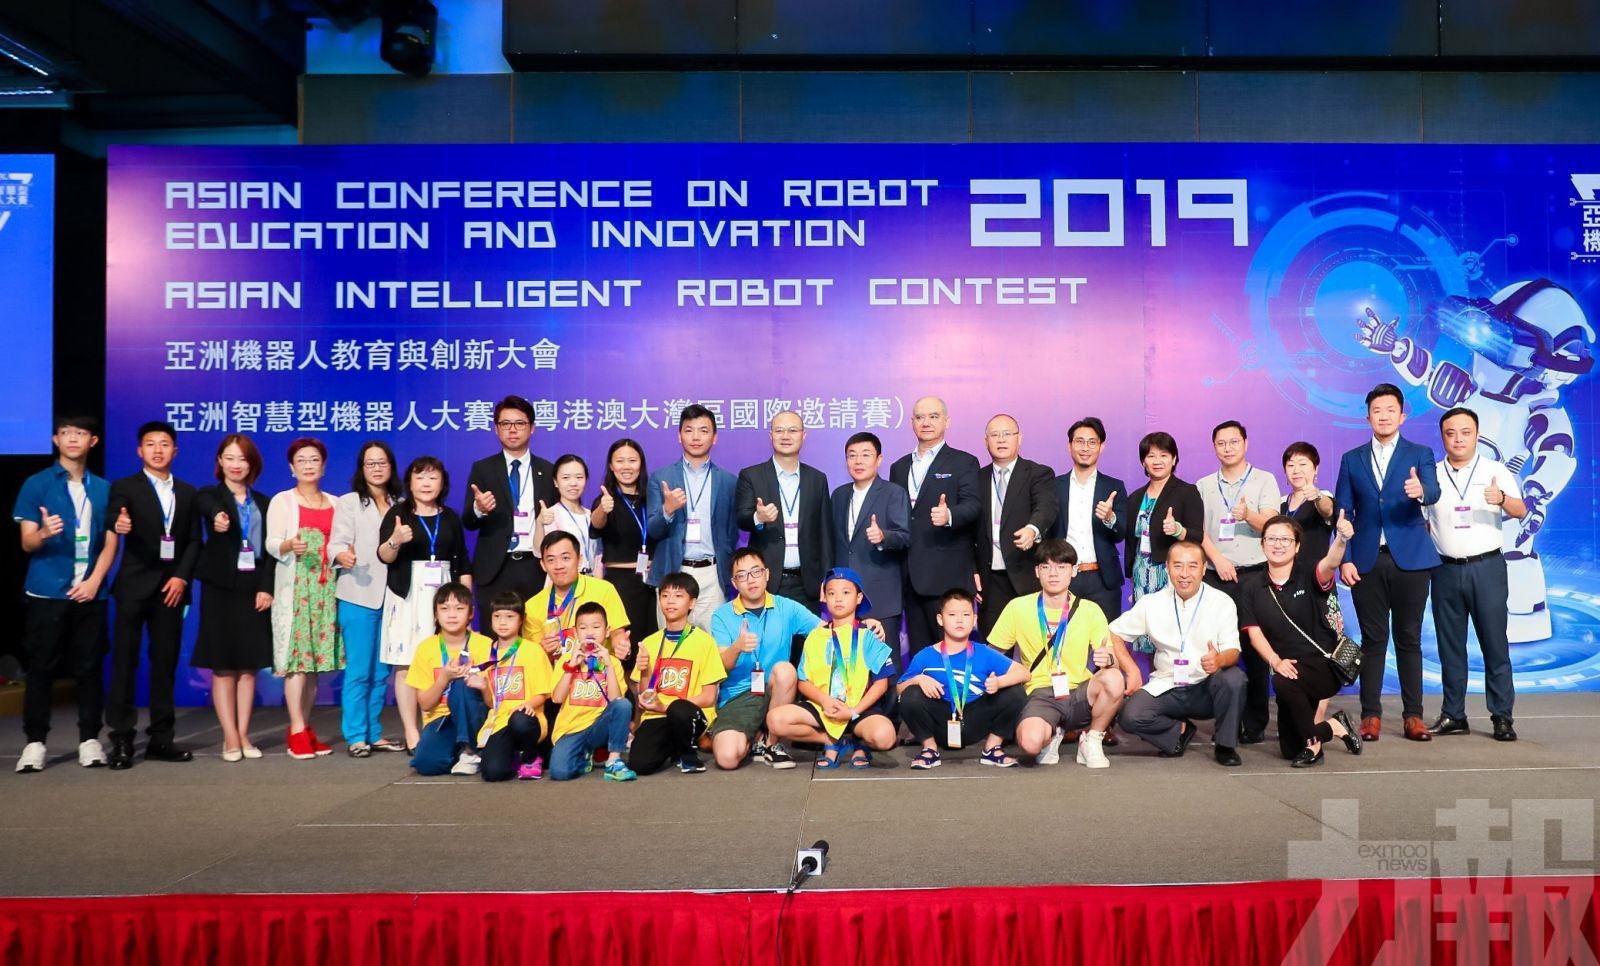 2019年亞洲機器人教育與創新大會成功舉行